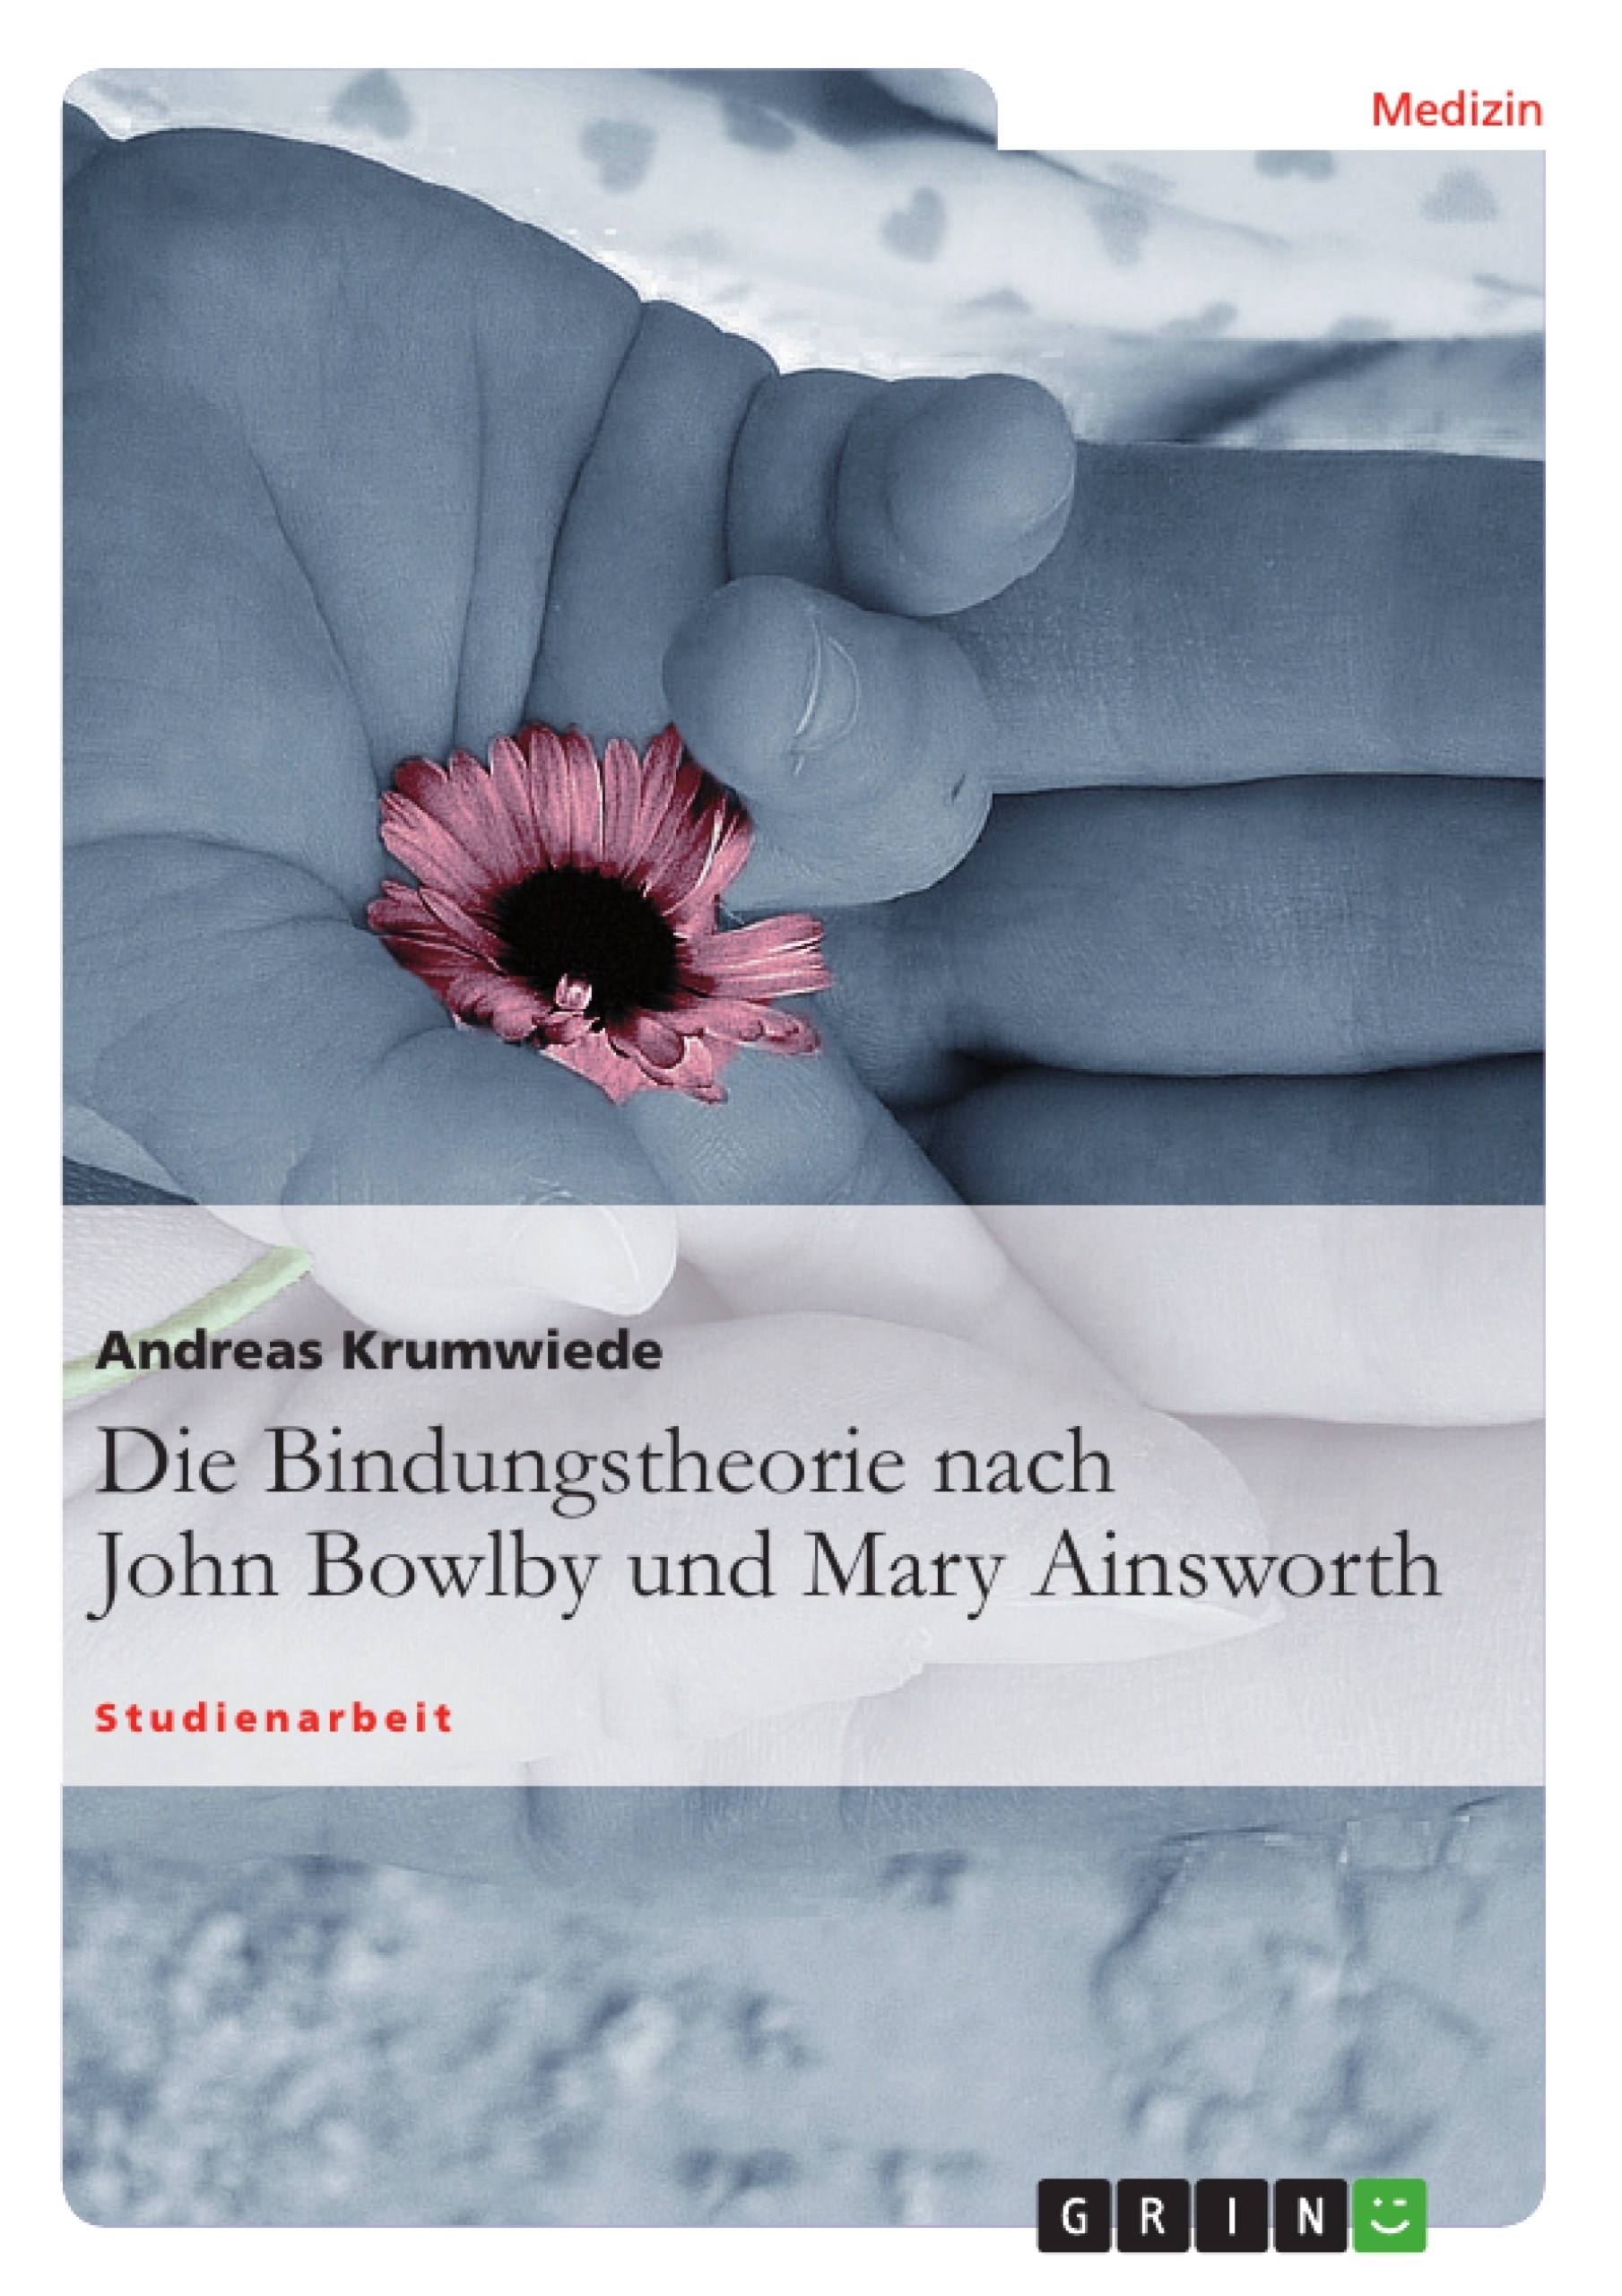 Título: Die Bindungstheorie nach John Bowlby und Mary Ainsworth